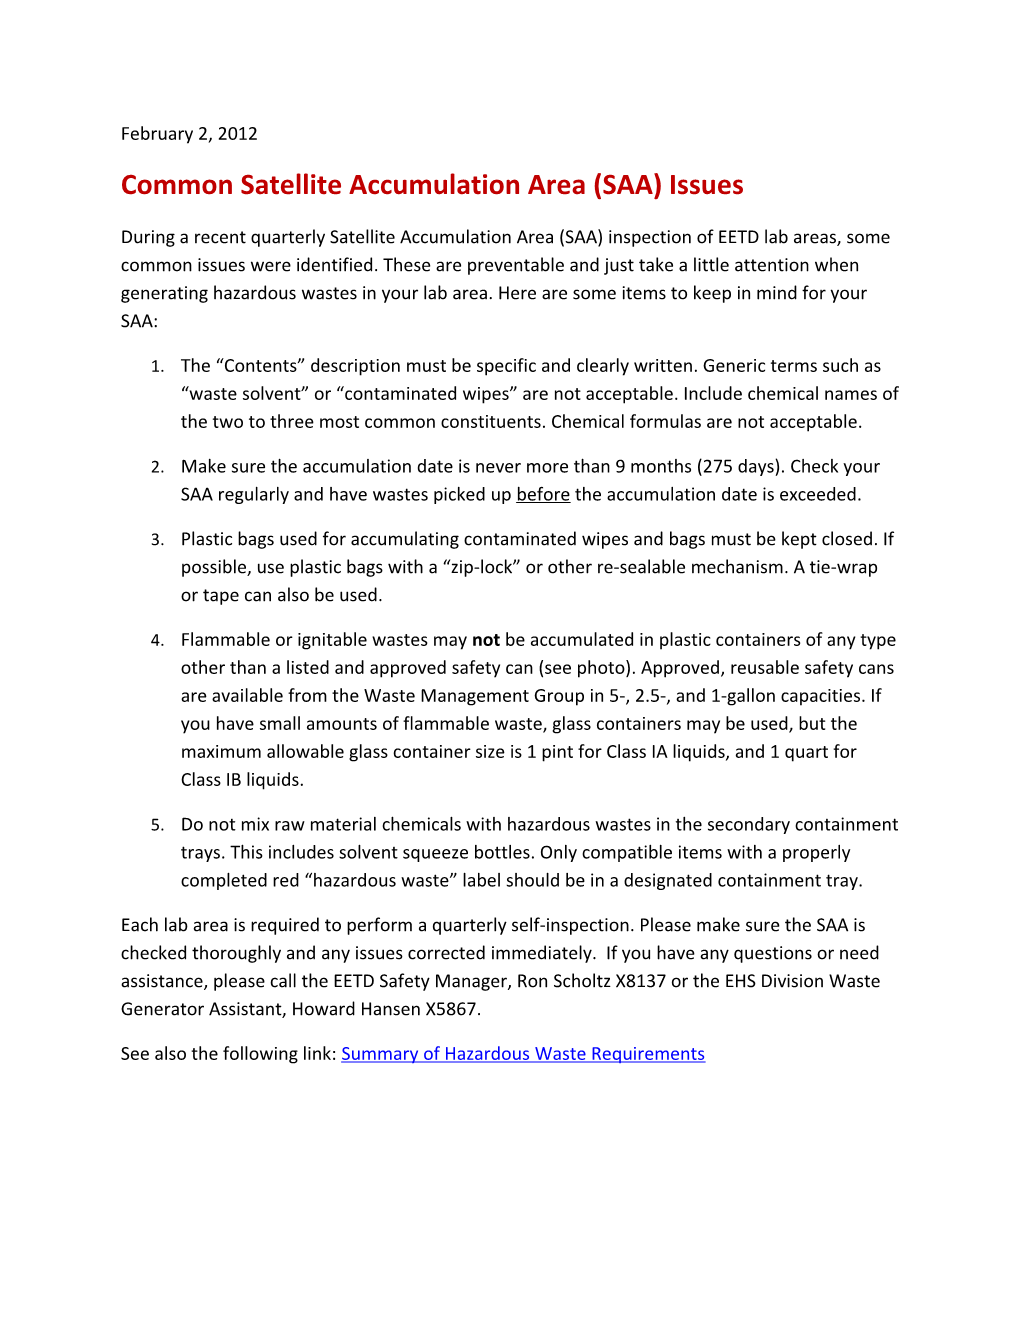 Common Satellite Accumulation Area (SAA) Issues